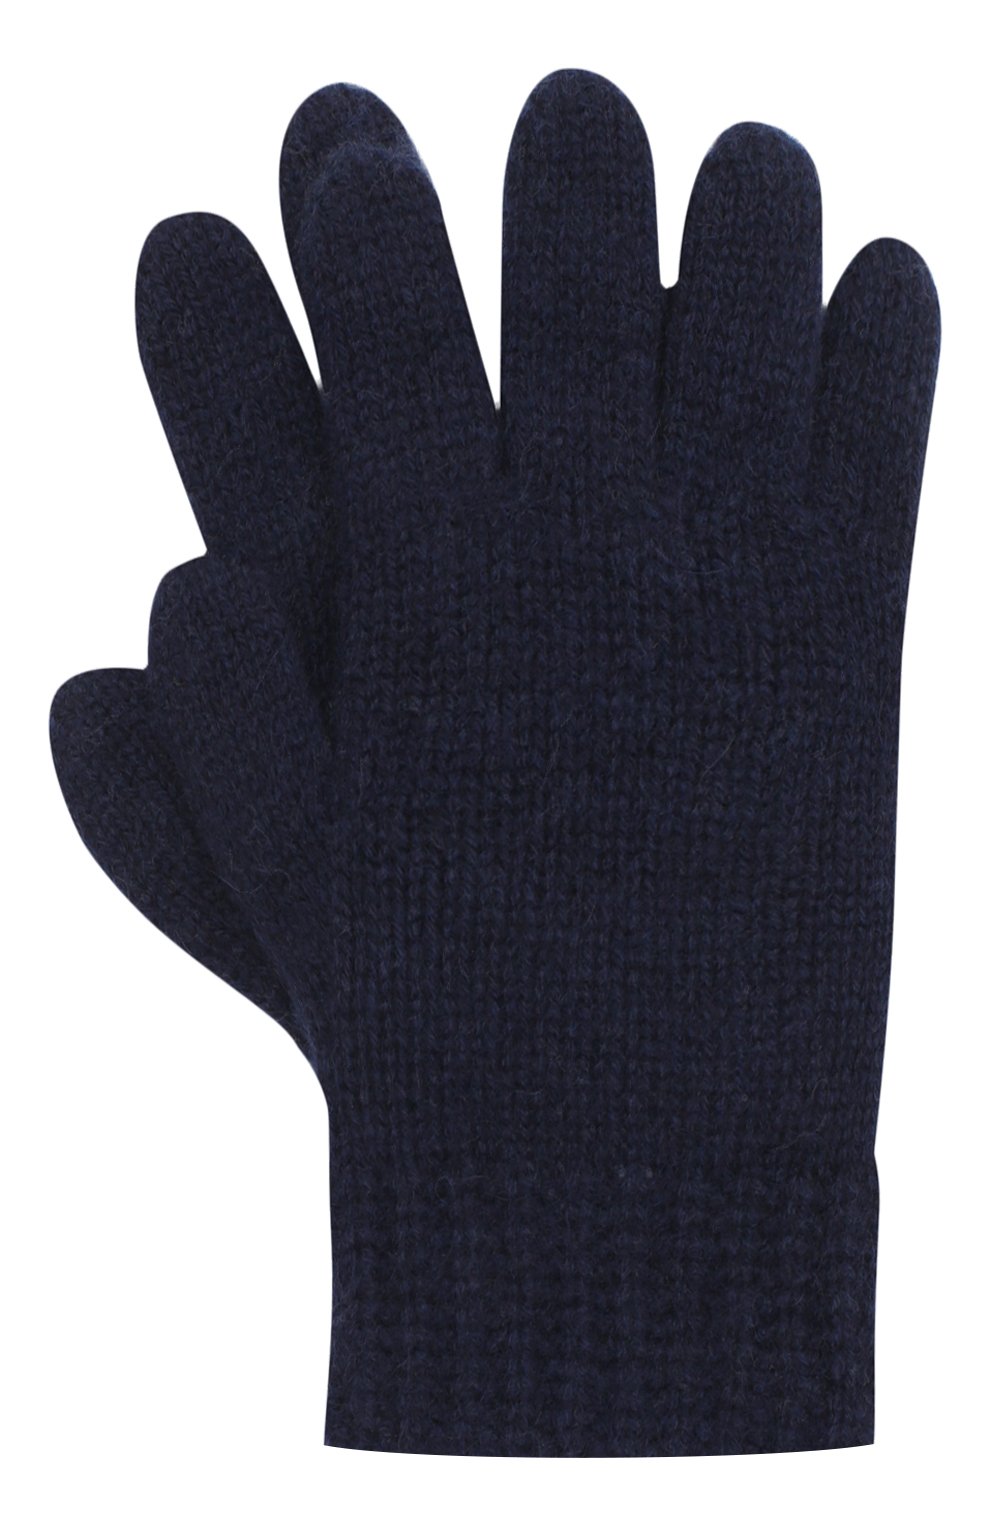 Детские кашемировые перчатки GIORGETTI CASHMERE темно-синего цвета, арт. MB1698/RASATI/8A | Фото 1 (Материал: Текстиль, Кашемир, Шерсть)